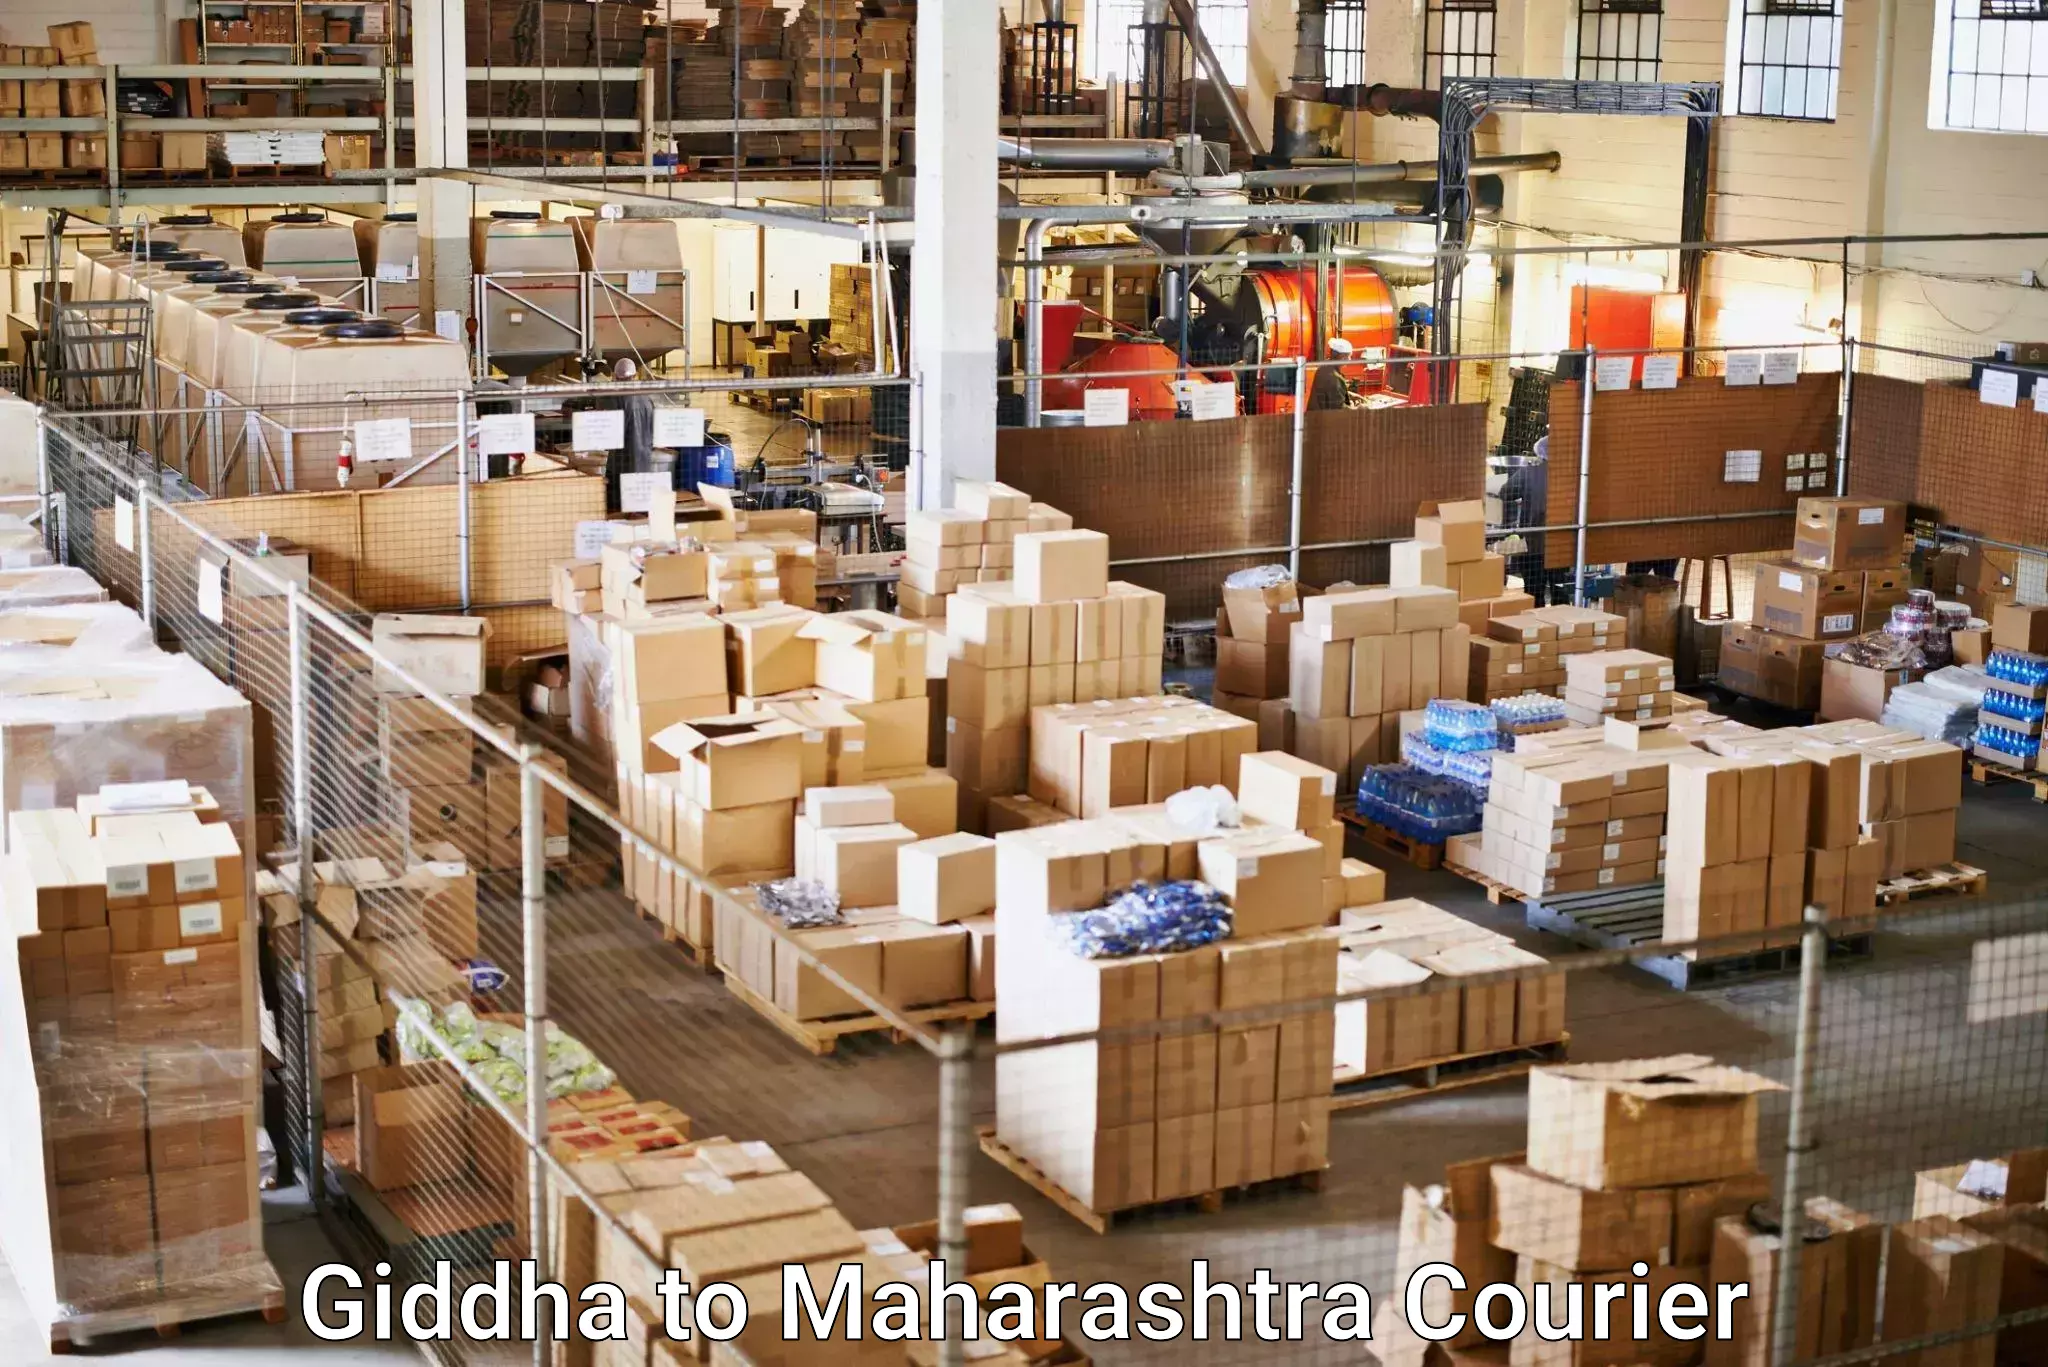 Business shipping needs Giddha to Maharashtra